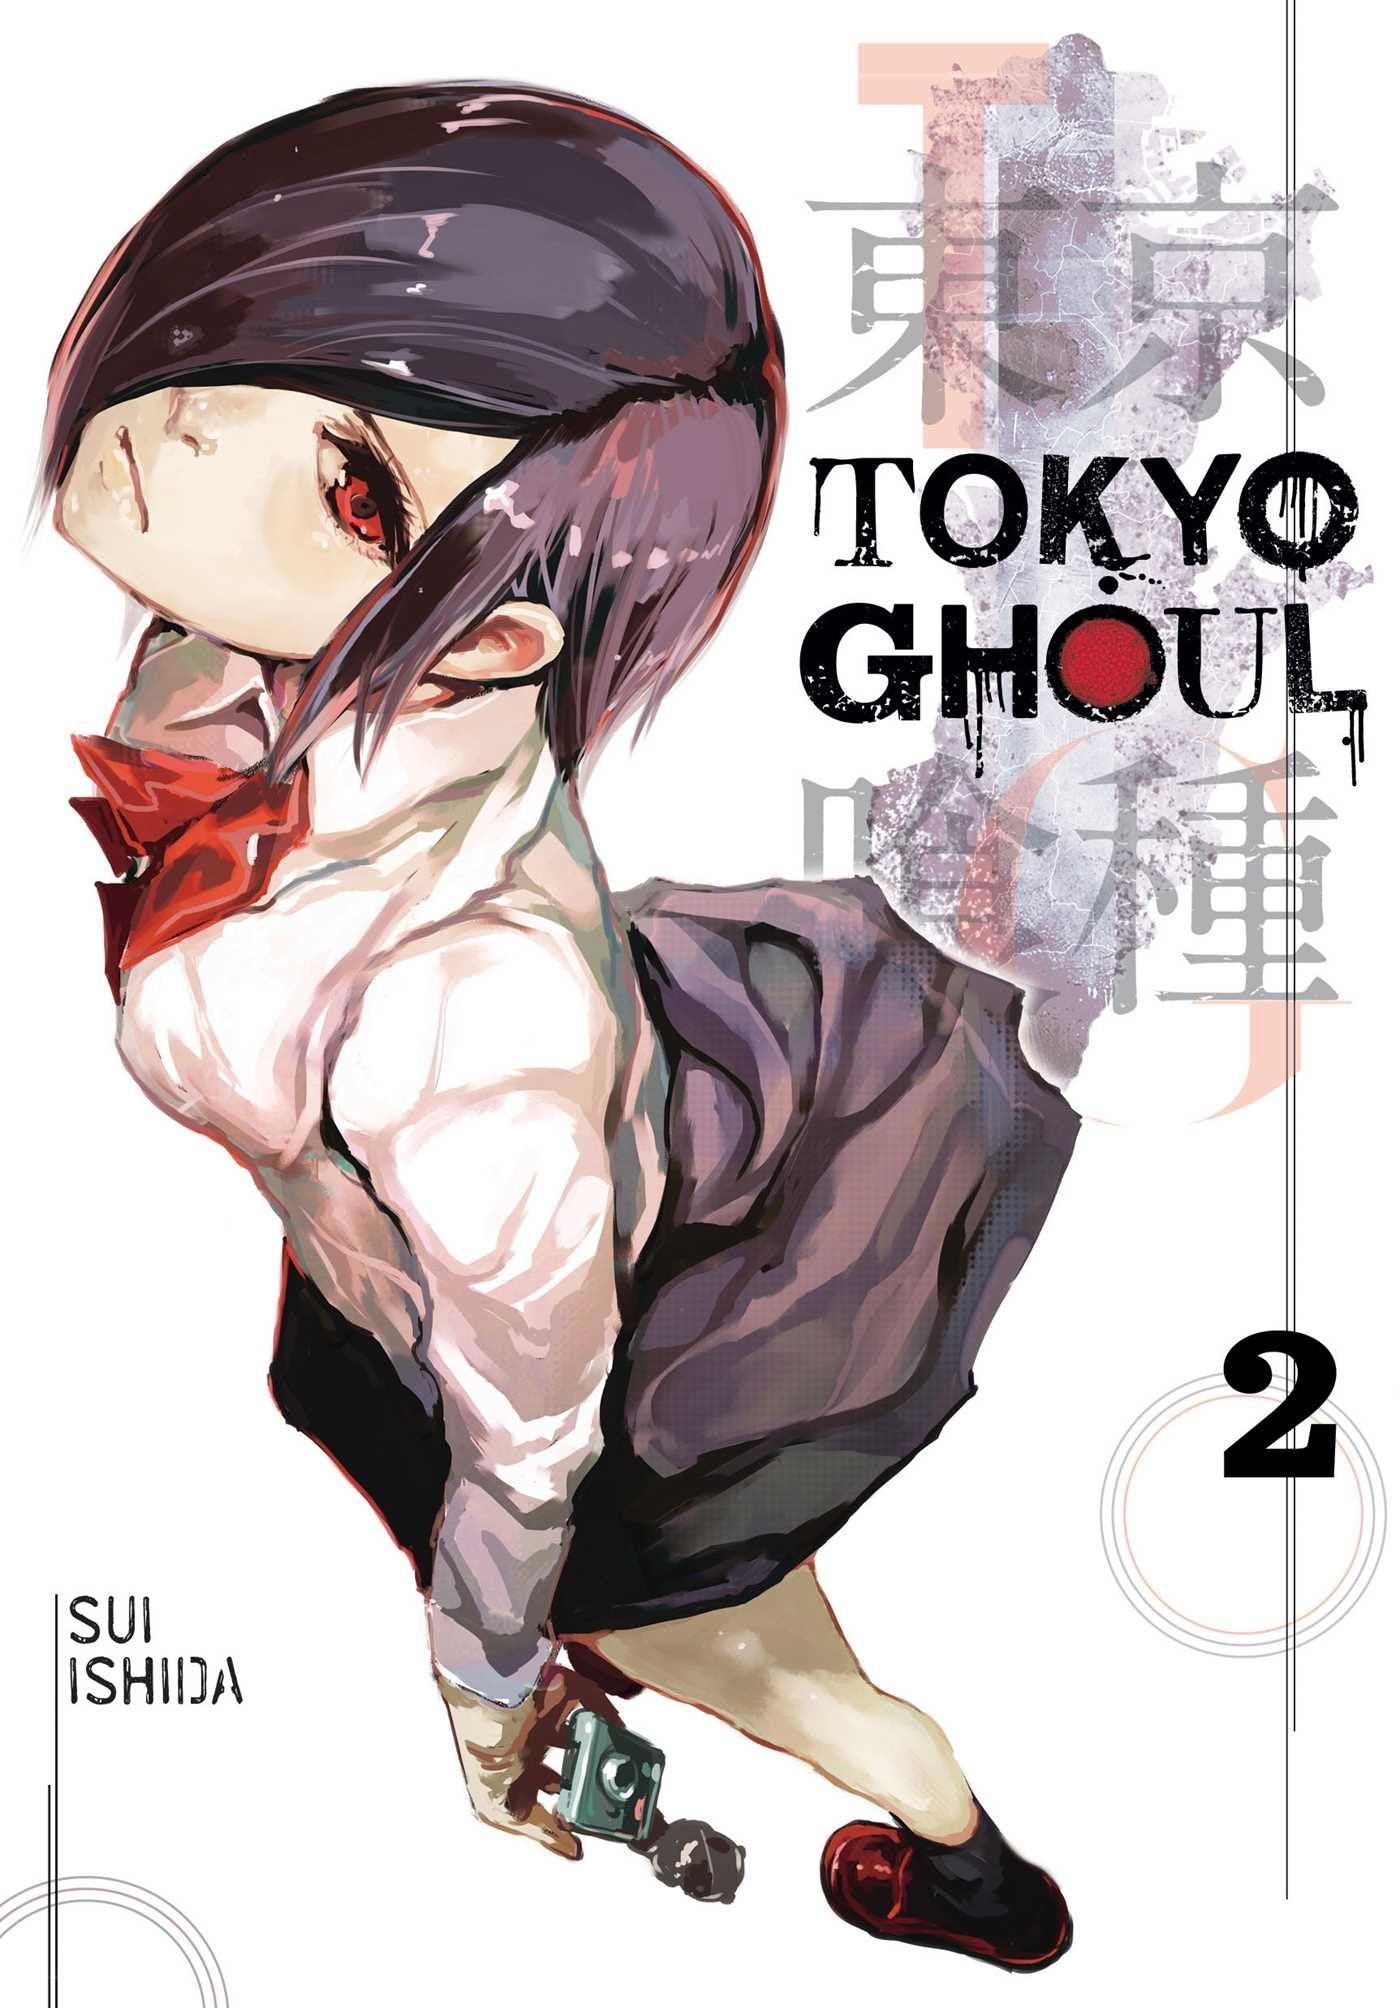 Tokyo Ghoul, Vol. 2 عربي